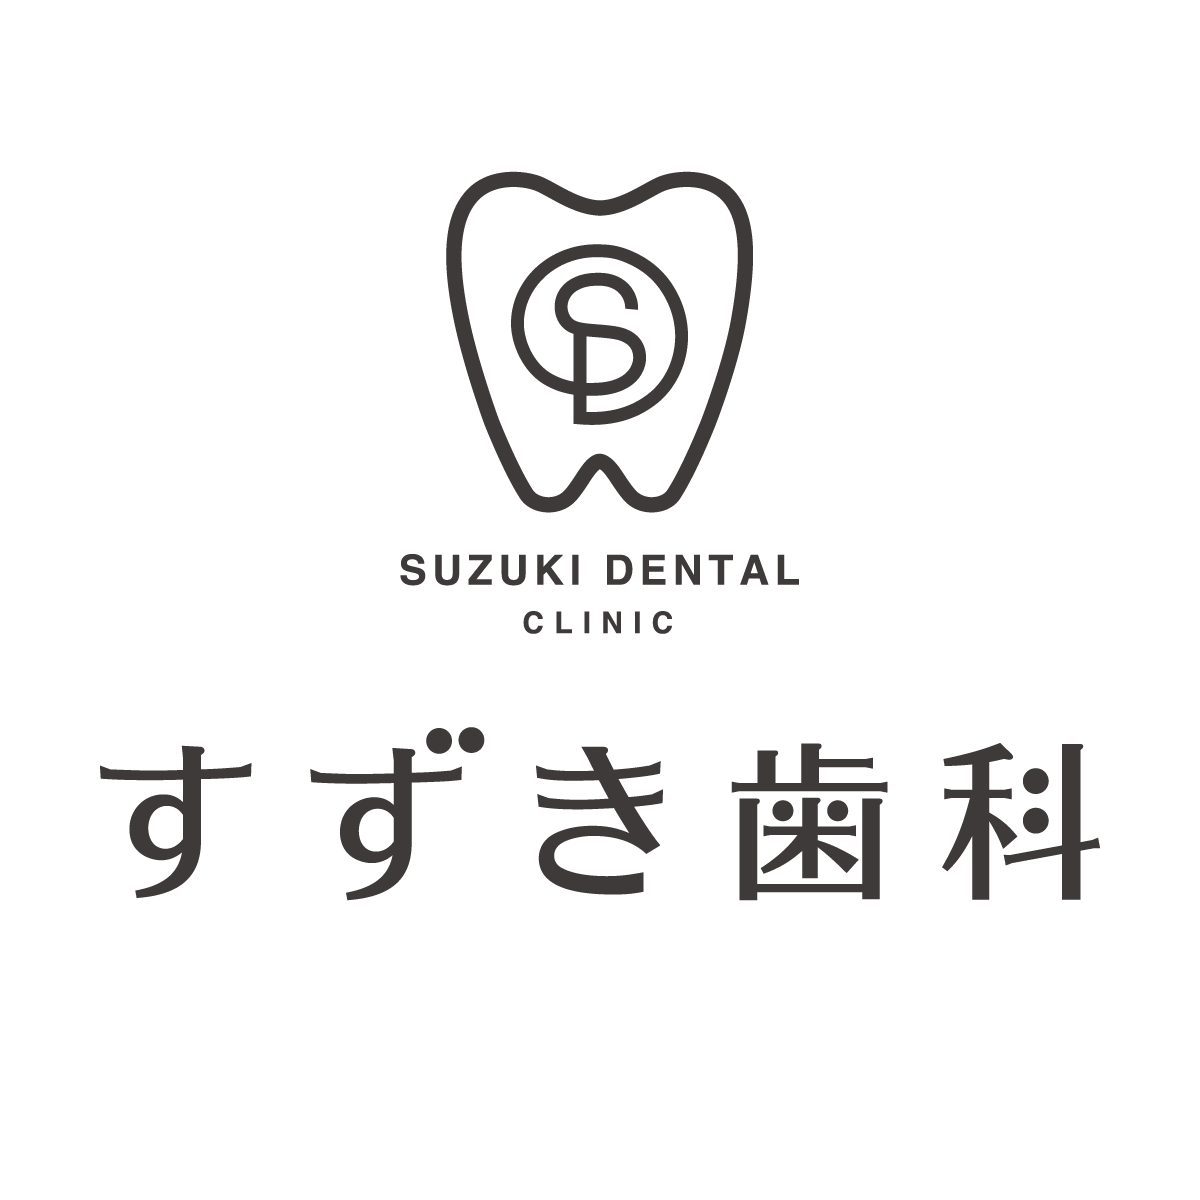 医療法人すずき歯科 Logo